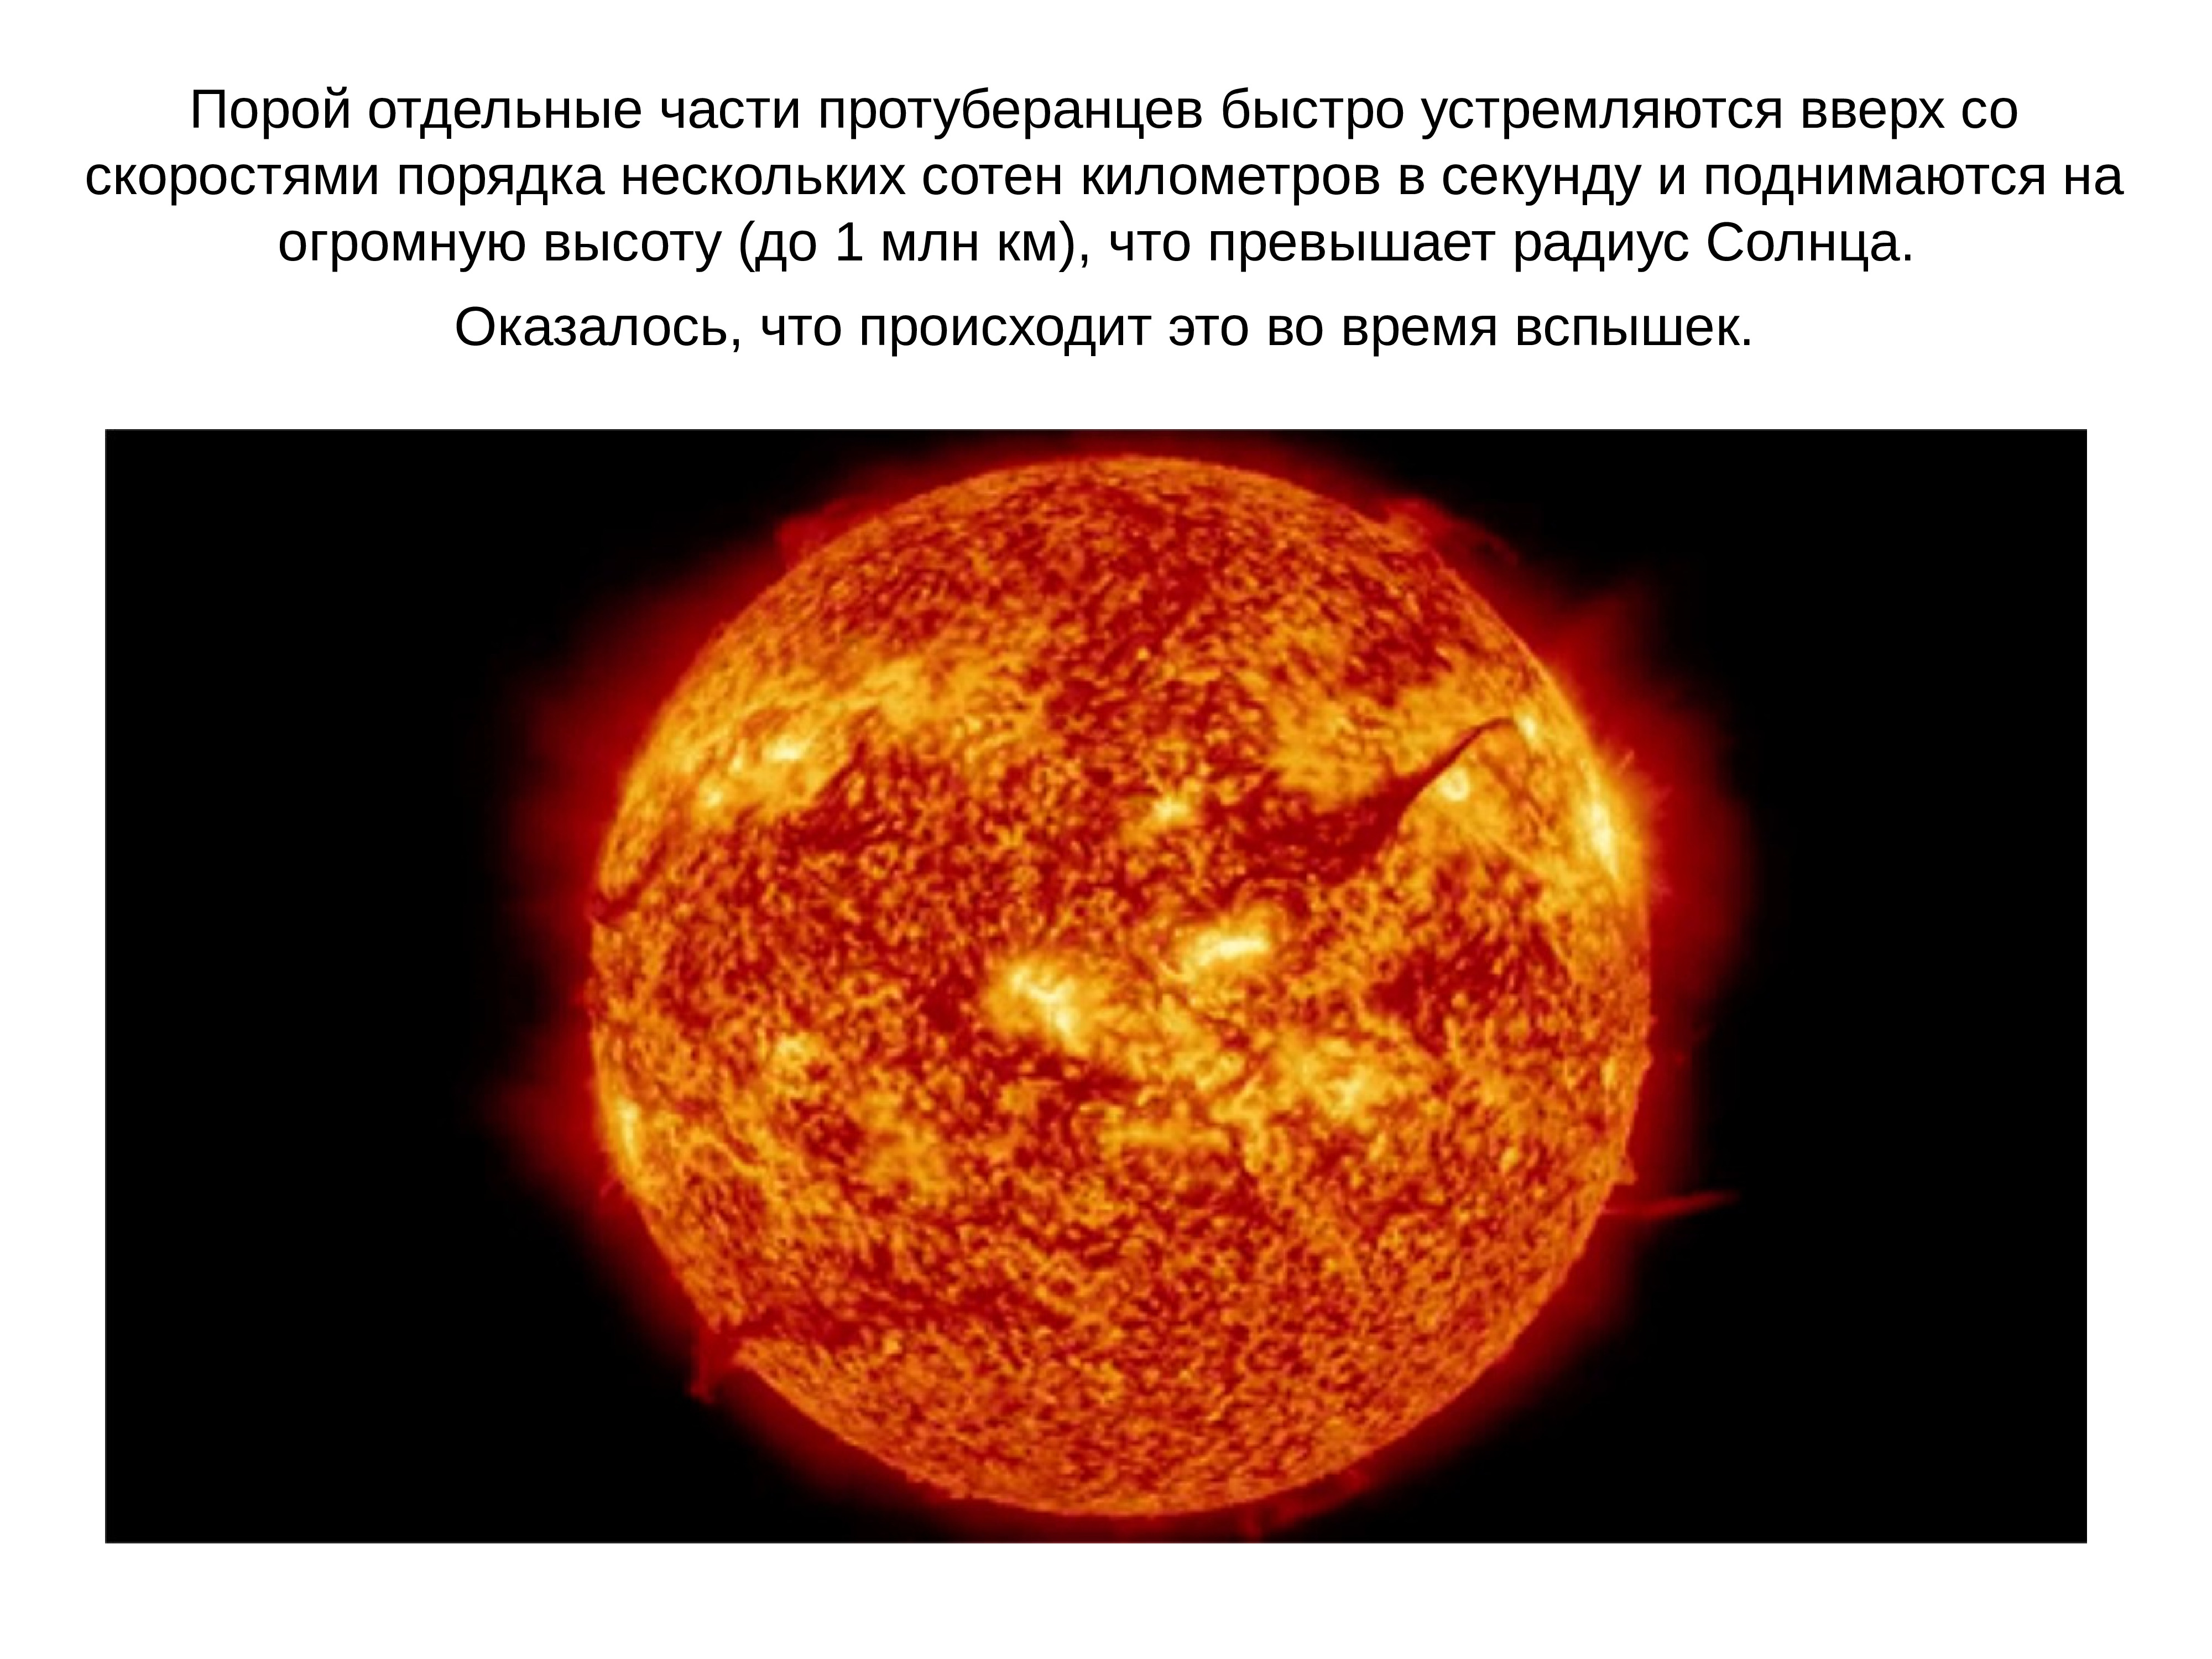 Солнечная атмосфера и солнечная активность. Атмосфера солнца и Солнечная активность презентация. Солнечная активность солнце астрономия. Строение атмосферы солнца. Атмосфера солнца презентация.